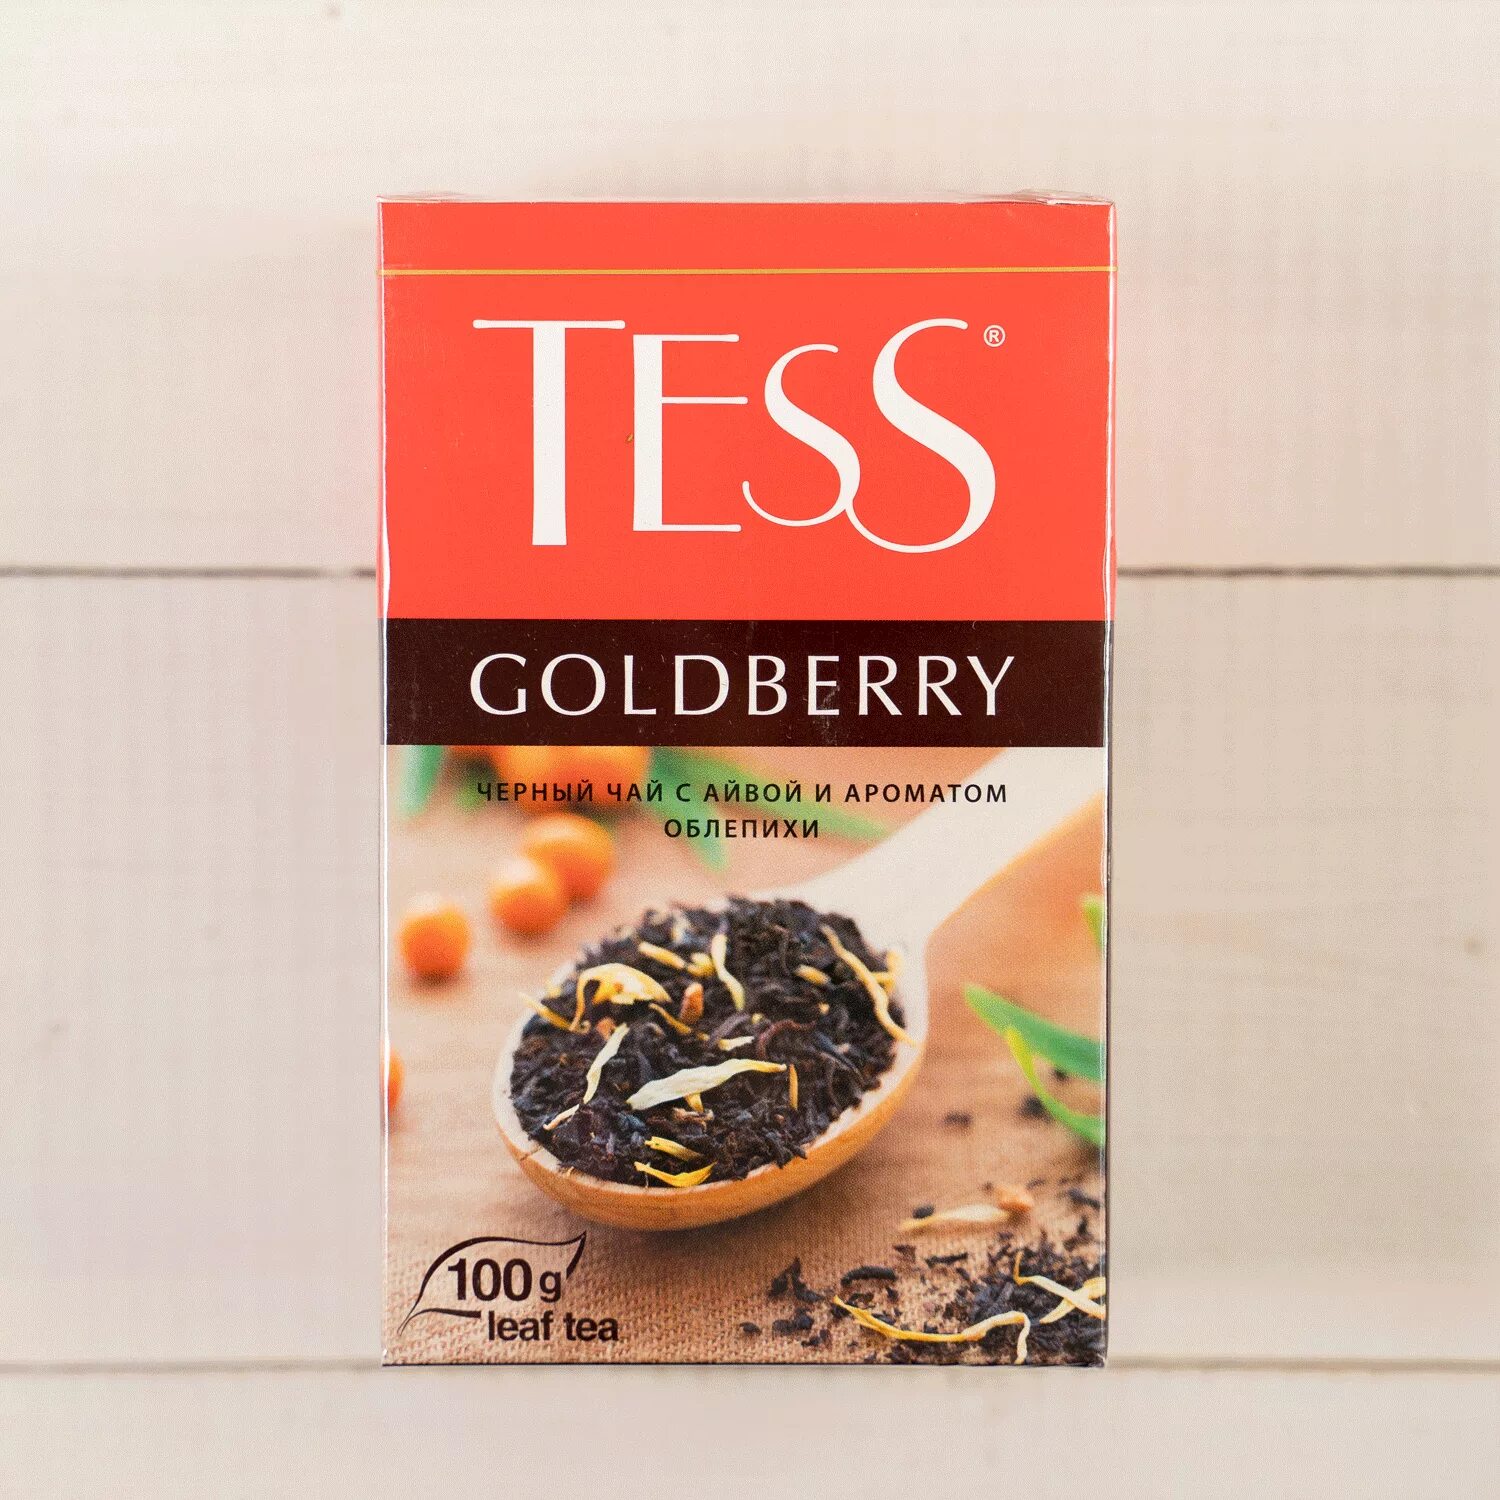 Чай черный Tess Goldberry 100г. ГОЛДБЕРИ чёрный Тесс чай. Чай Тесс Голд Берри 100г. Тесс Голдберри 100г.чай лист.черн.с доб..